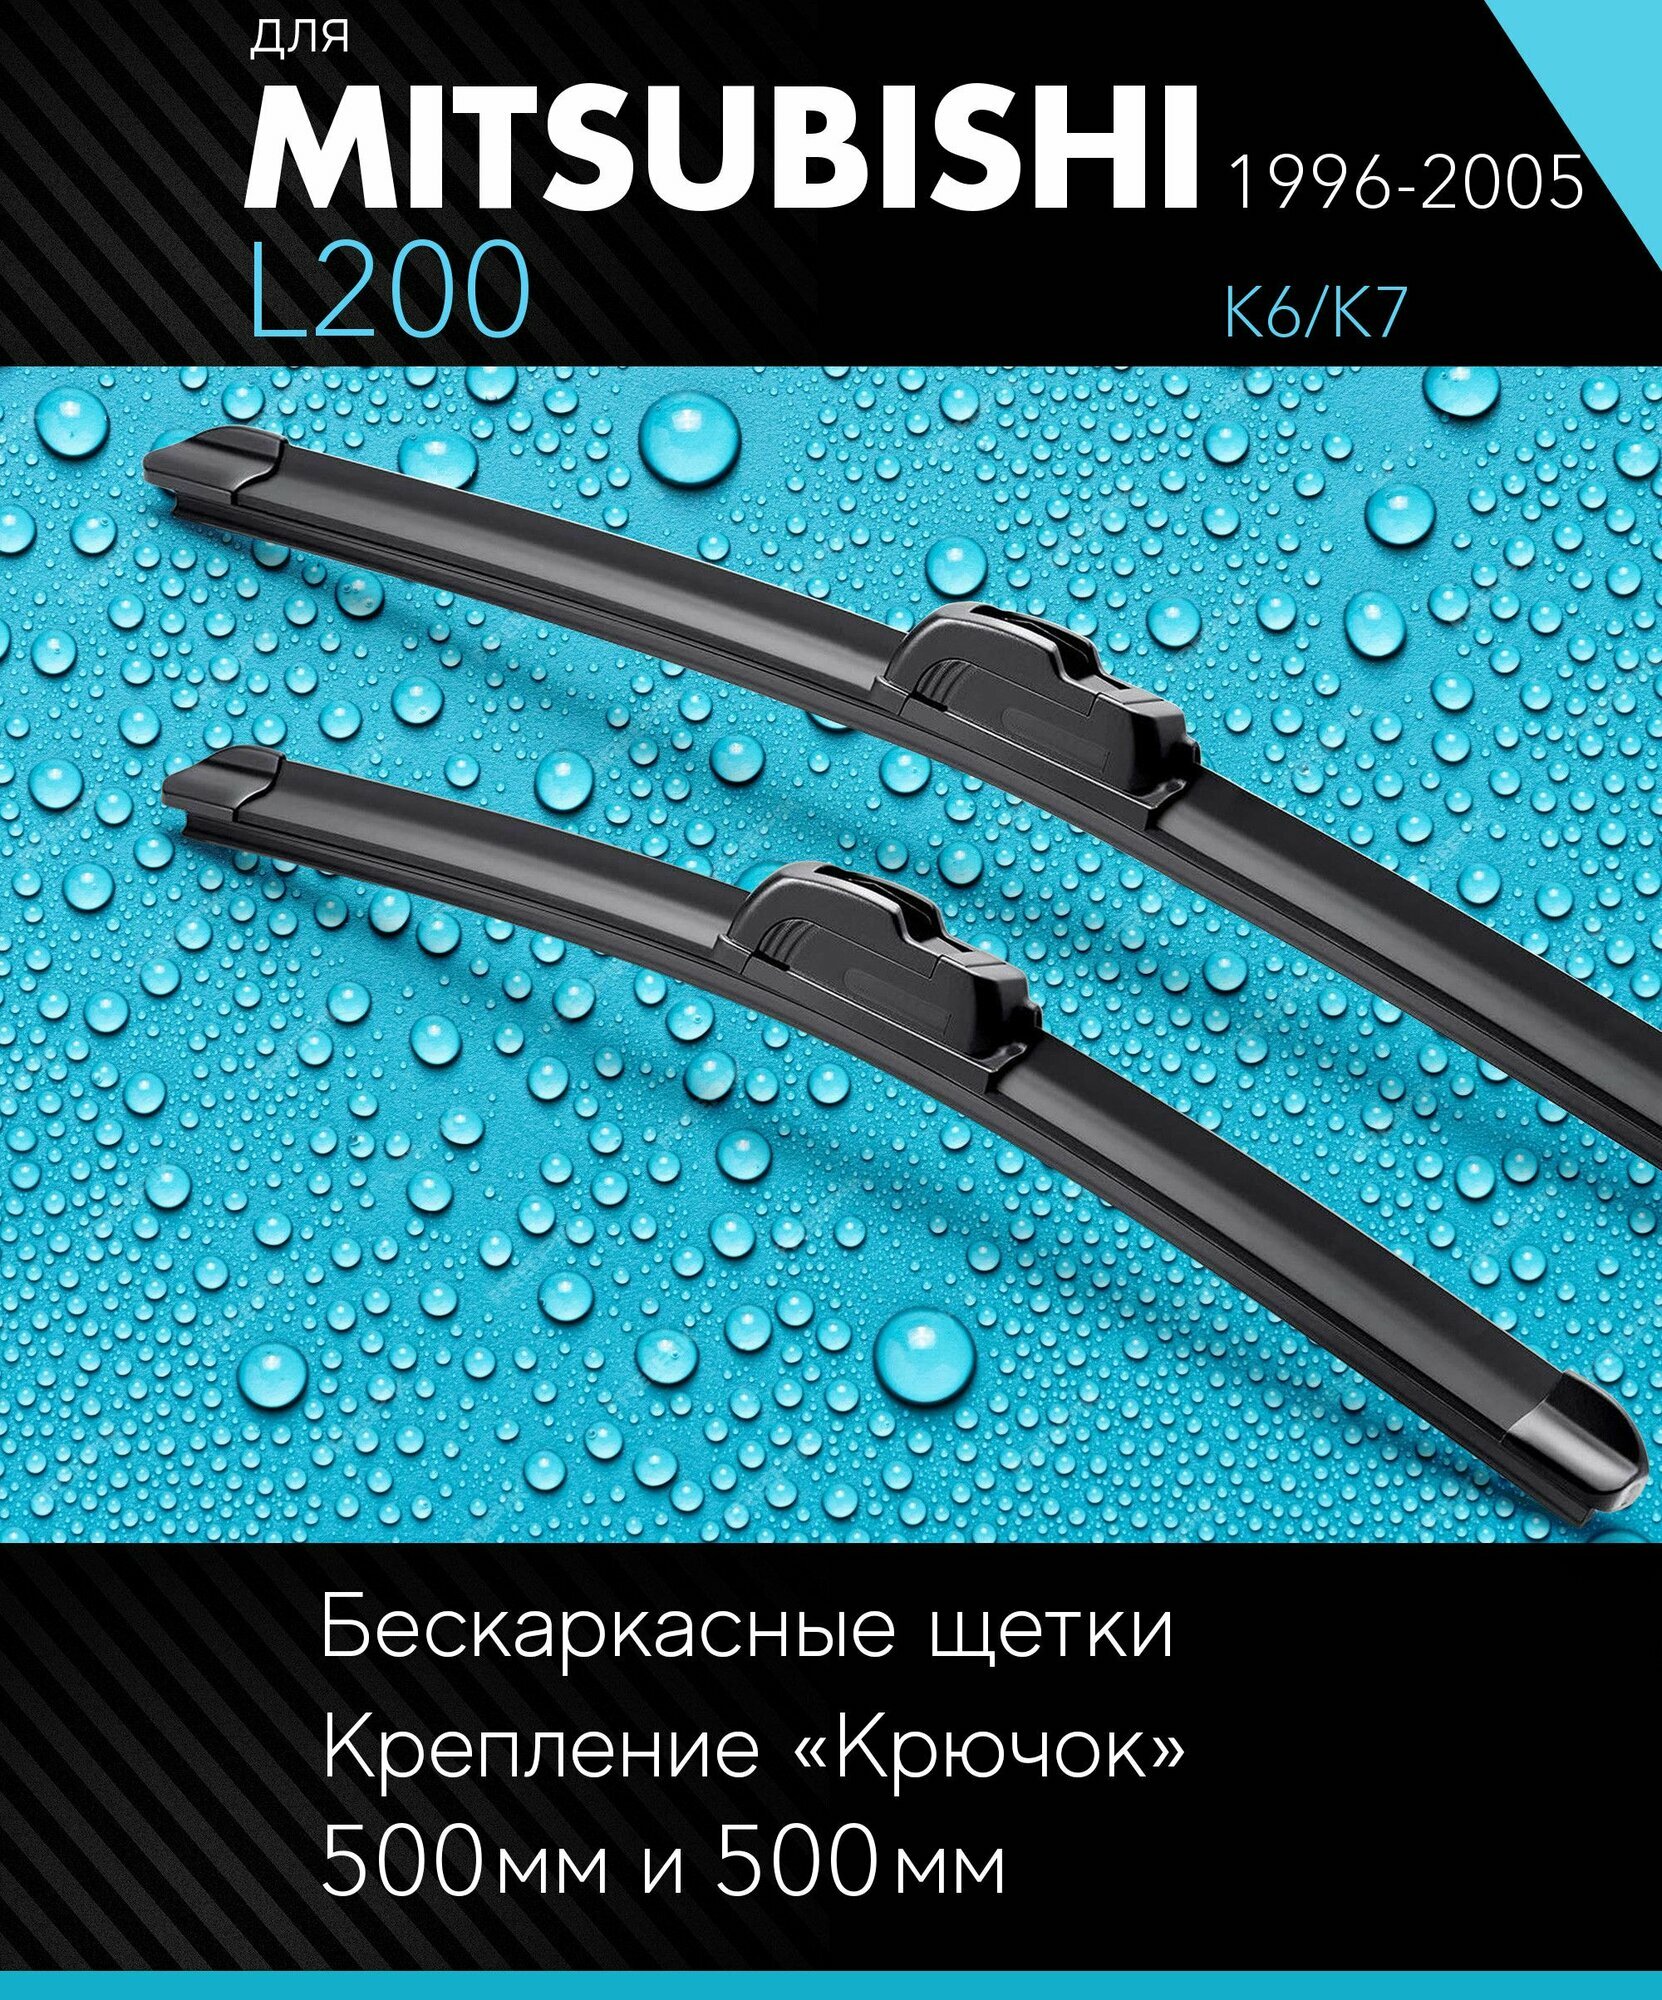 2 щетки стеклоочистителя 480 480 мм на Митсубиси Л200 1996-2005 бескаркасные дворники комплект для Mitsubishi L200 (K6/K7) - Autoled